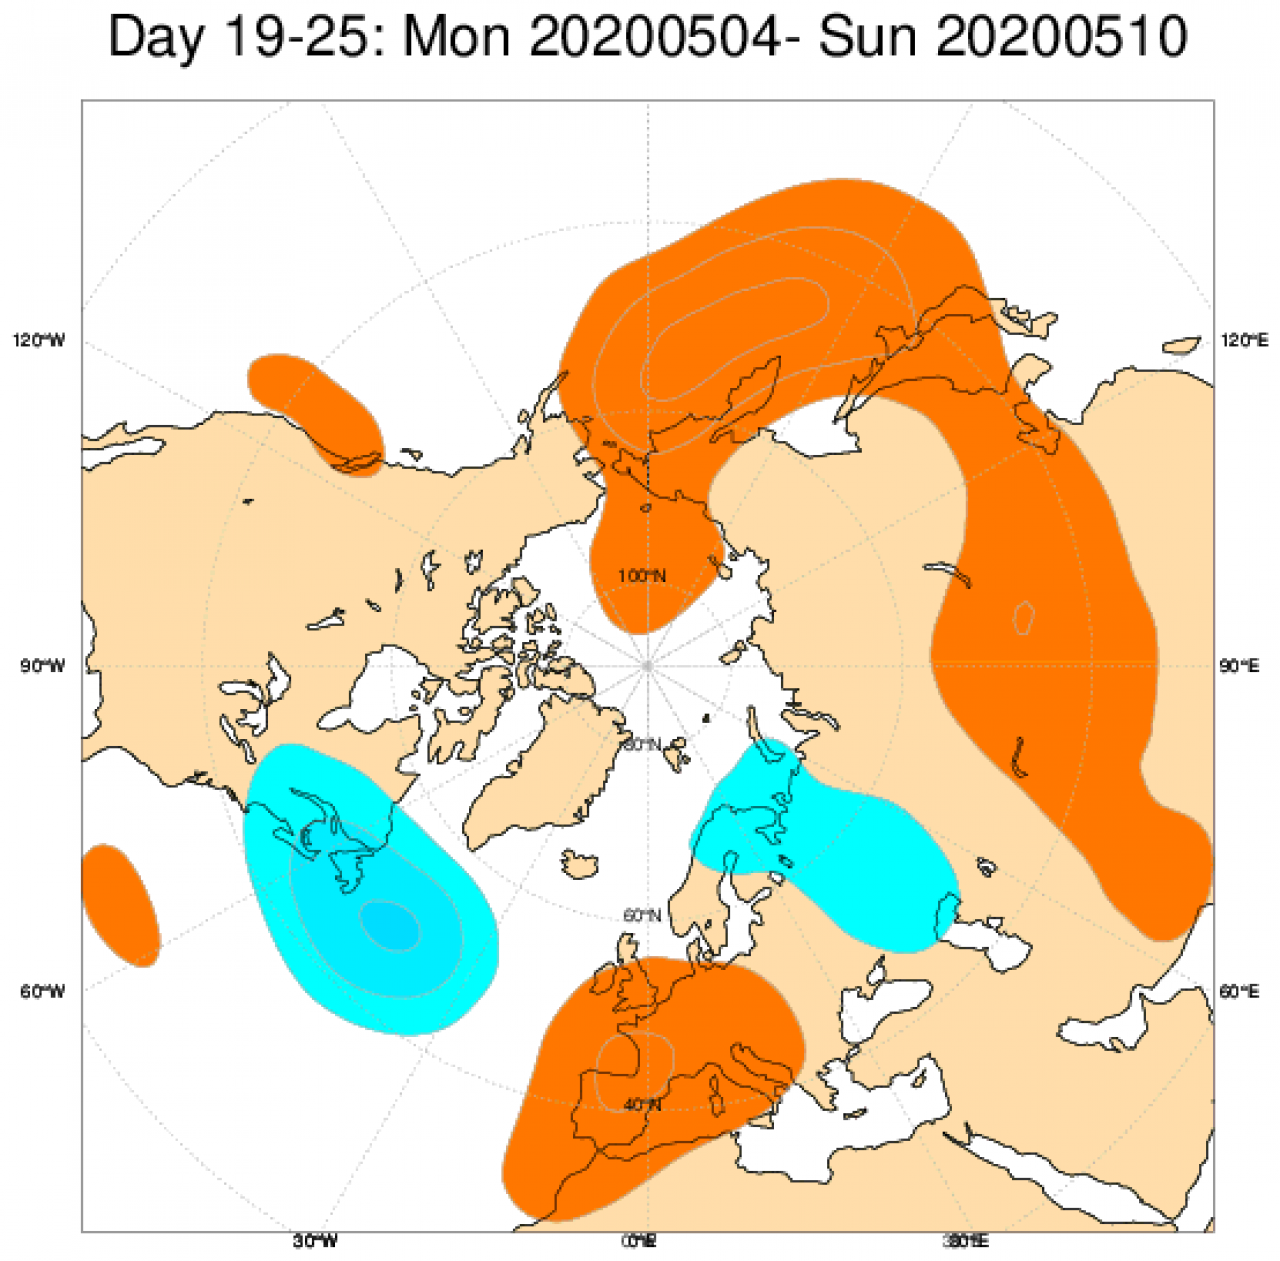 Le anomalie di geopotenziale attese nel periodo 4 - 10 maggio secondo il modello ECMWF